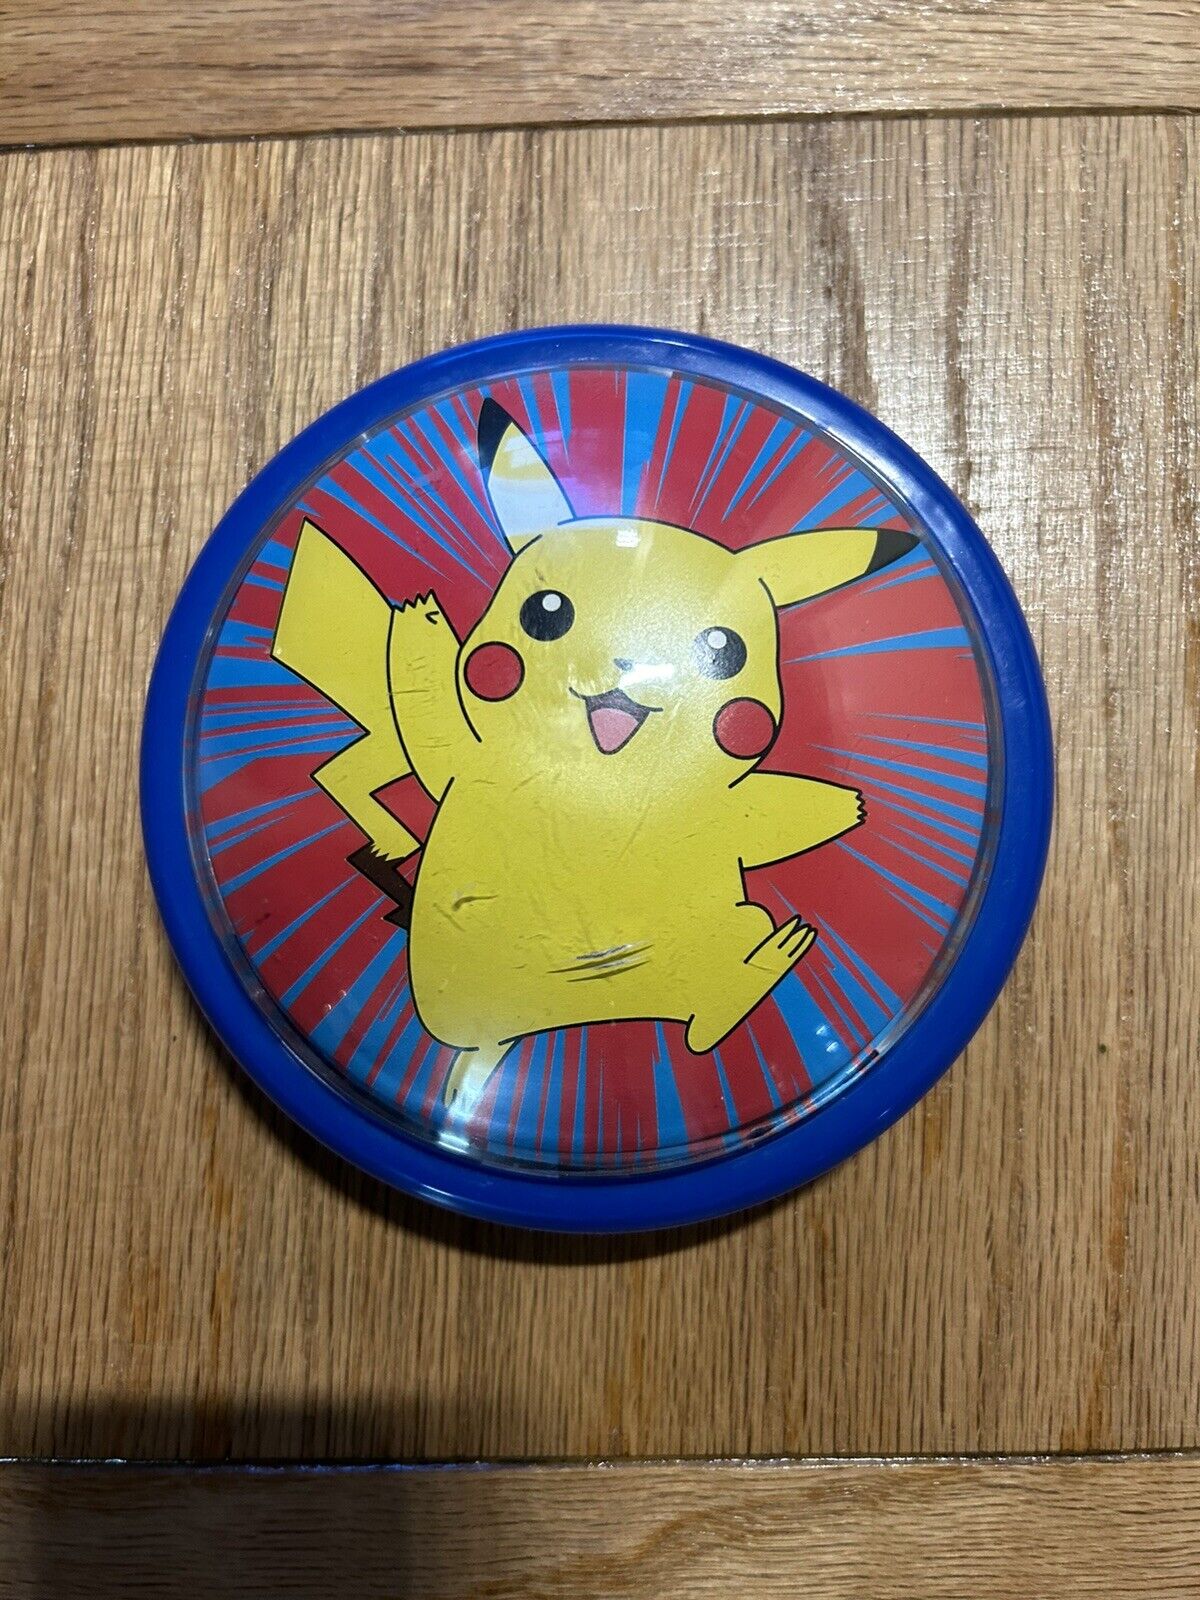 Vintage 2001 Rare Pokemon Pikachu Push Button Night Light